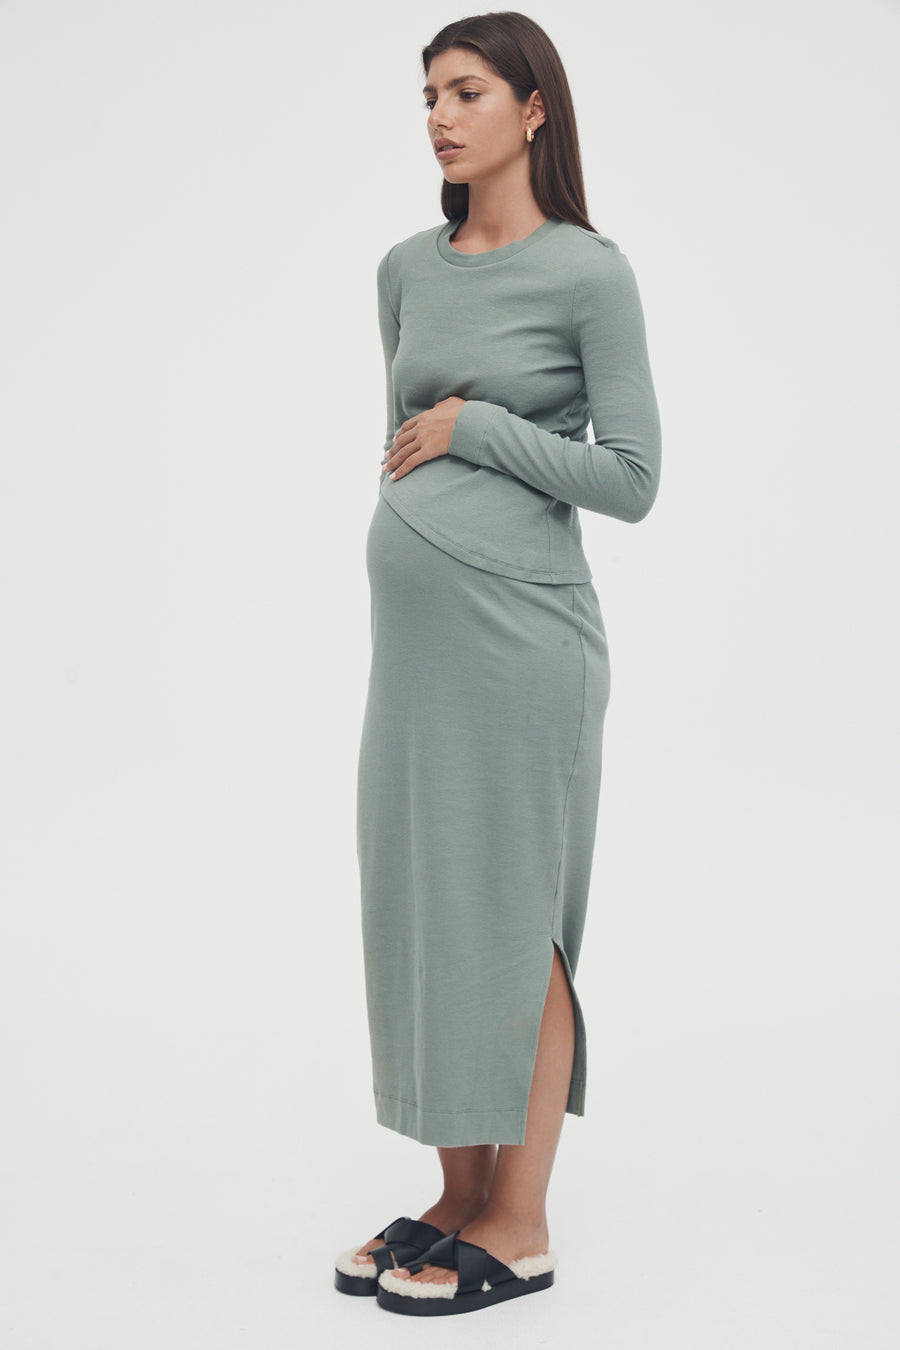 Stretchy Rib Maternity Dress (Olive) 3